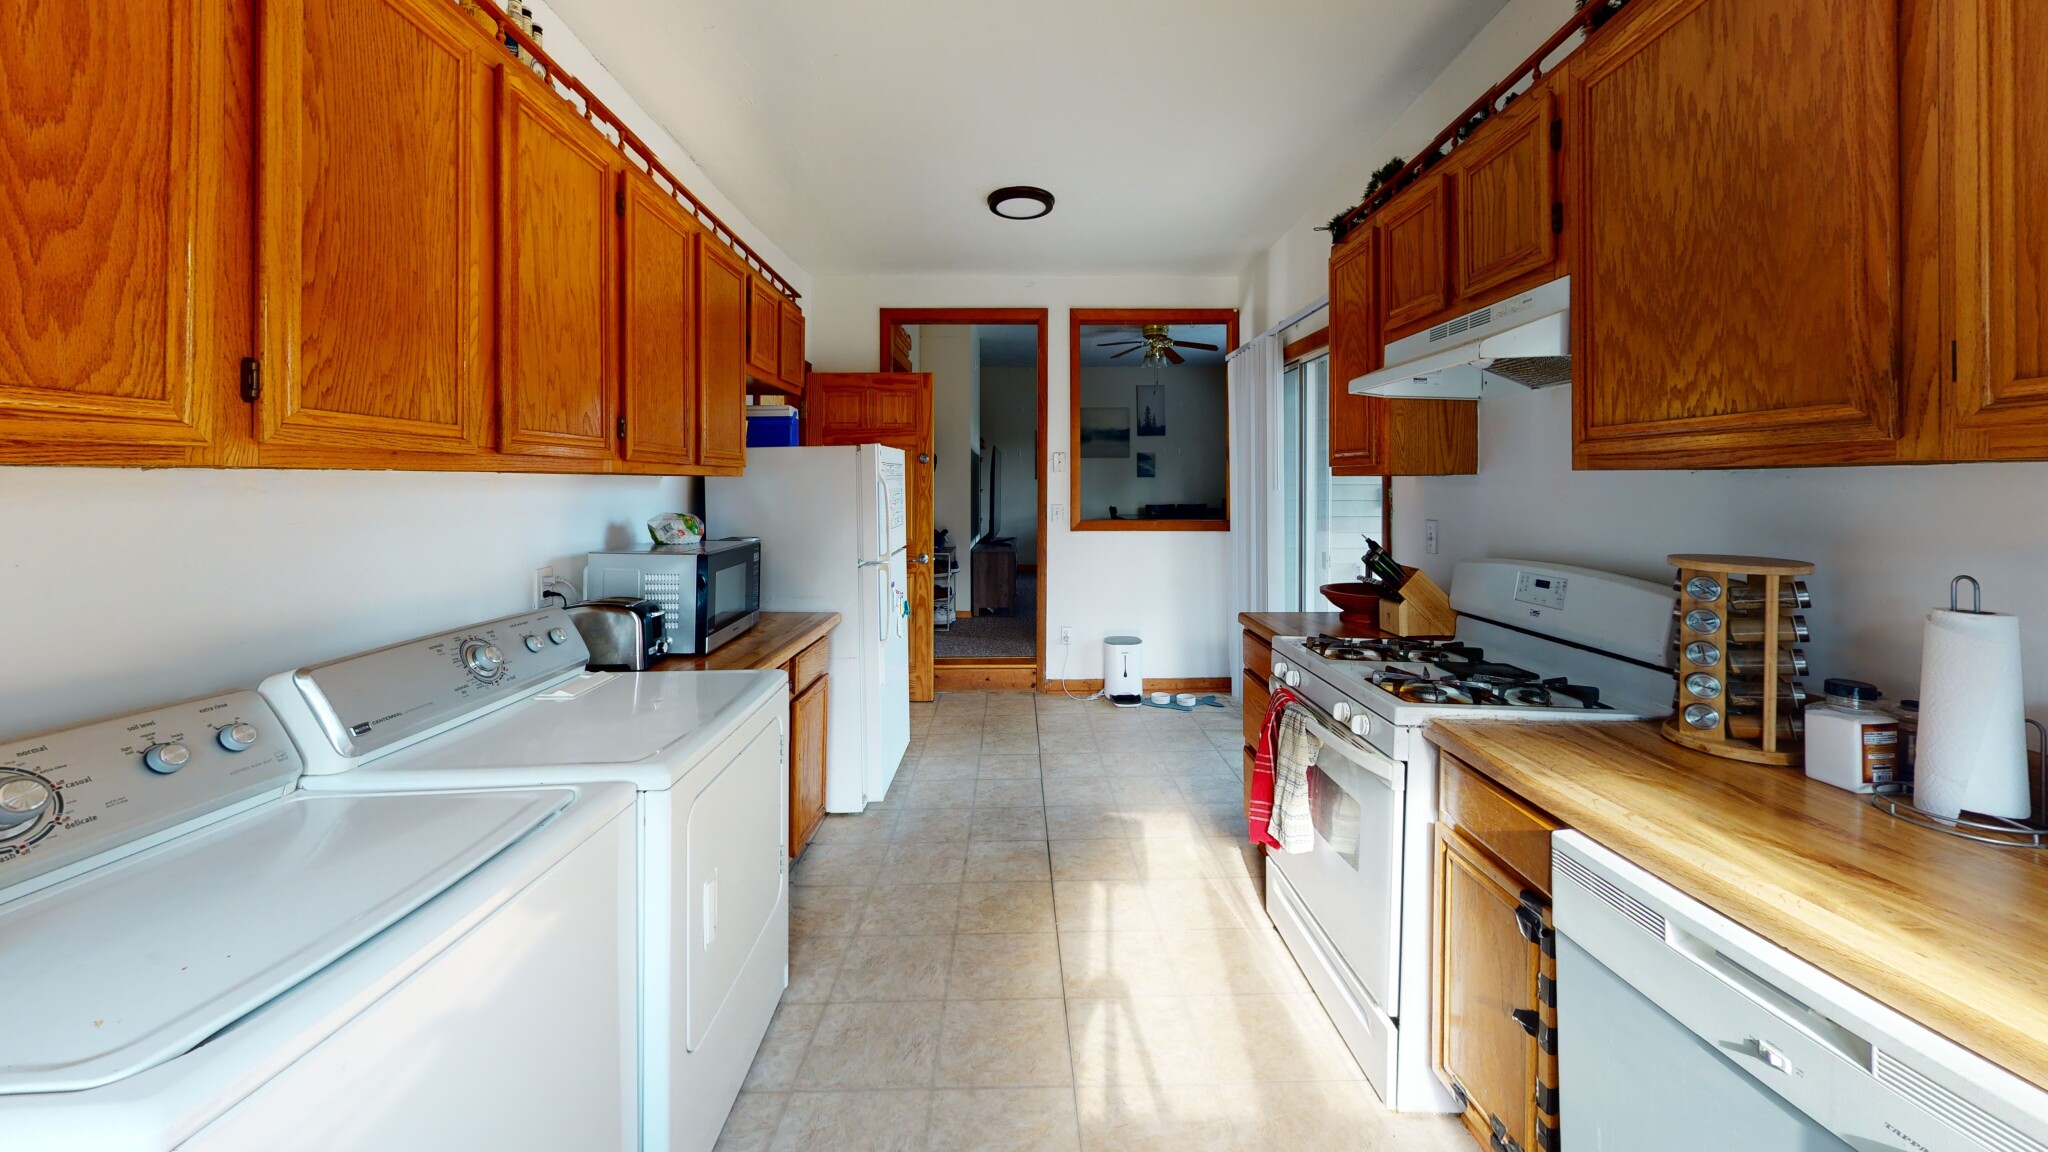 Photos of apartment on Auburn,Newton MA 02466